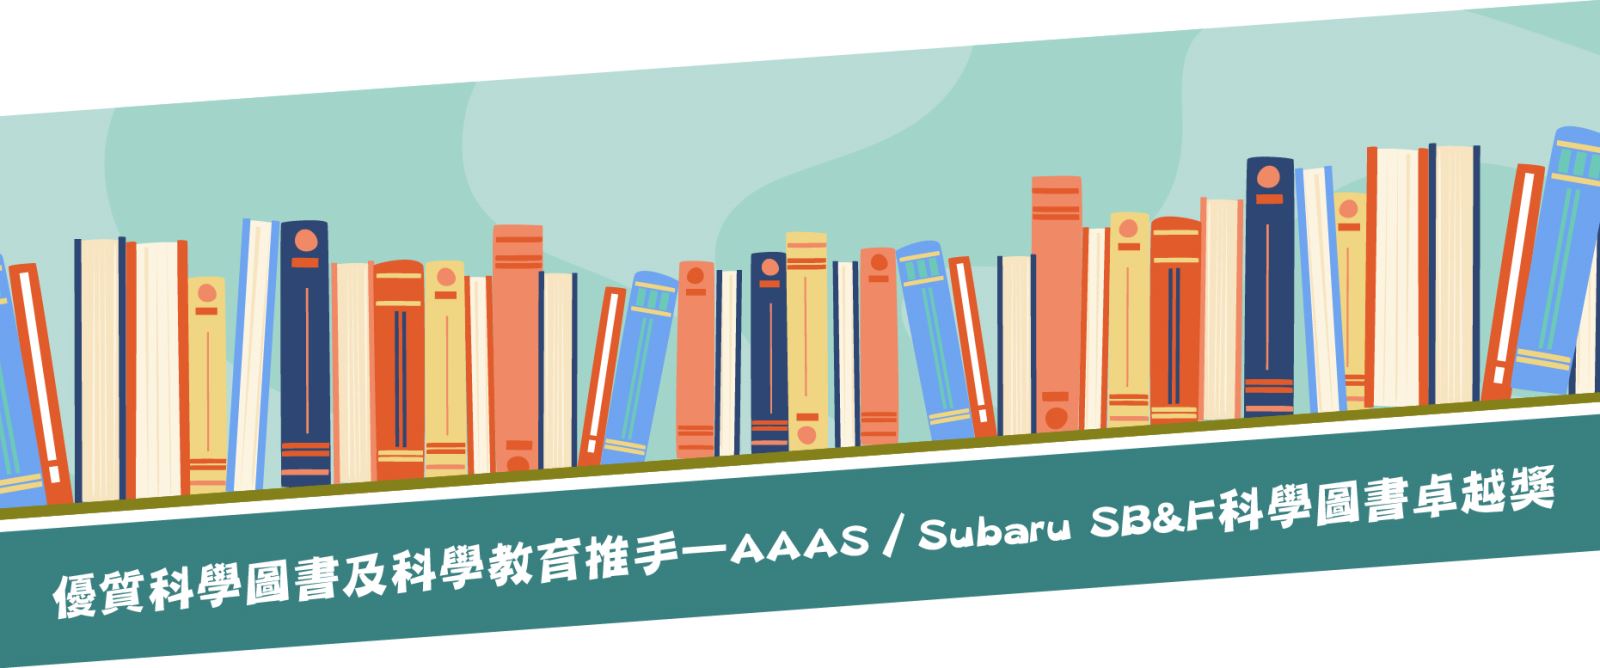 優質科學圖書及科學教育推手－AAAS／Subaru SB&F科學圖書卓越獎